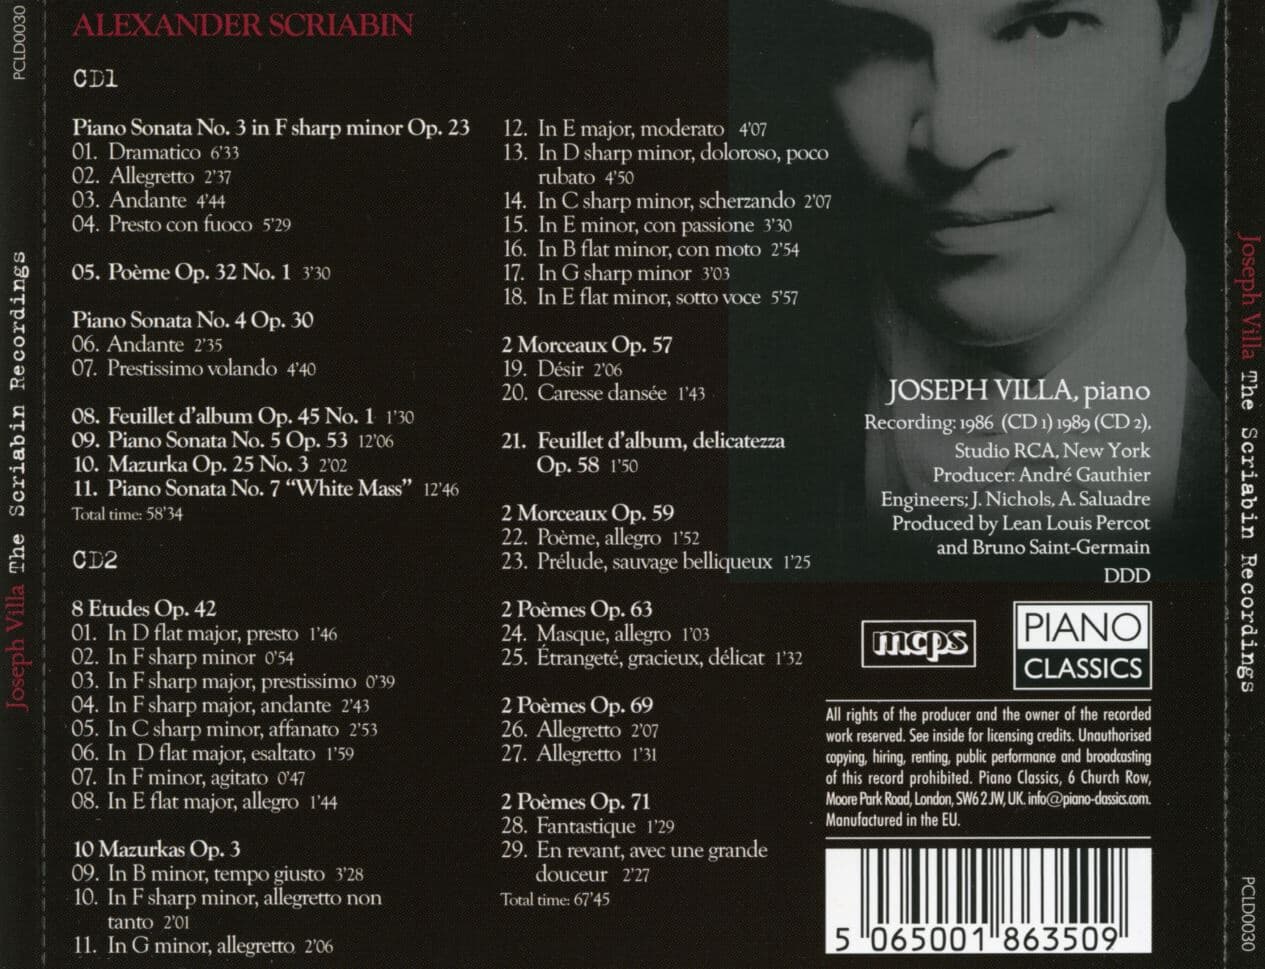 요셉 빌라 - Joseph Villa - The Scriabin Recordings 2Cds [E.U발매]